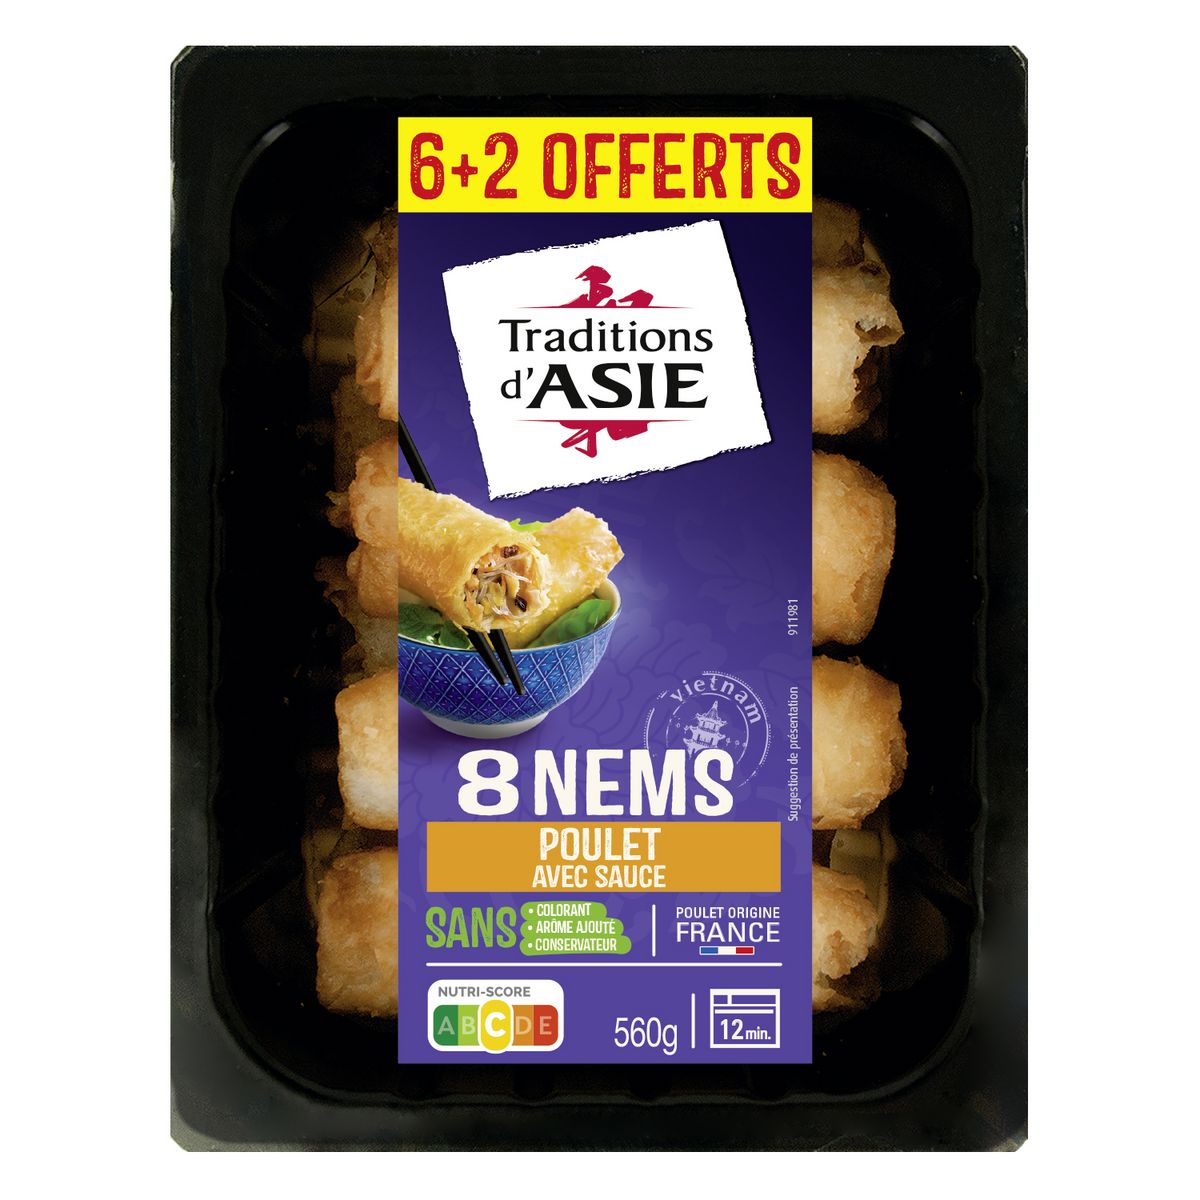 TRADITIONS D'ASIE Nems au poulet avec sauce  6+2 offerts 560g